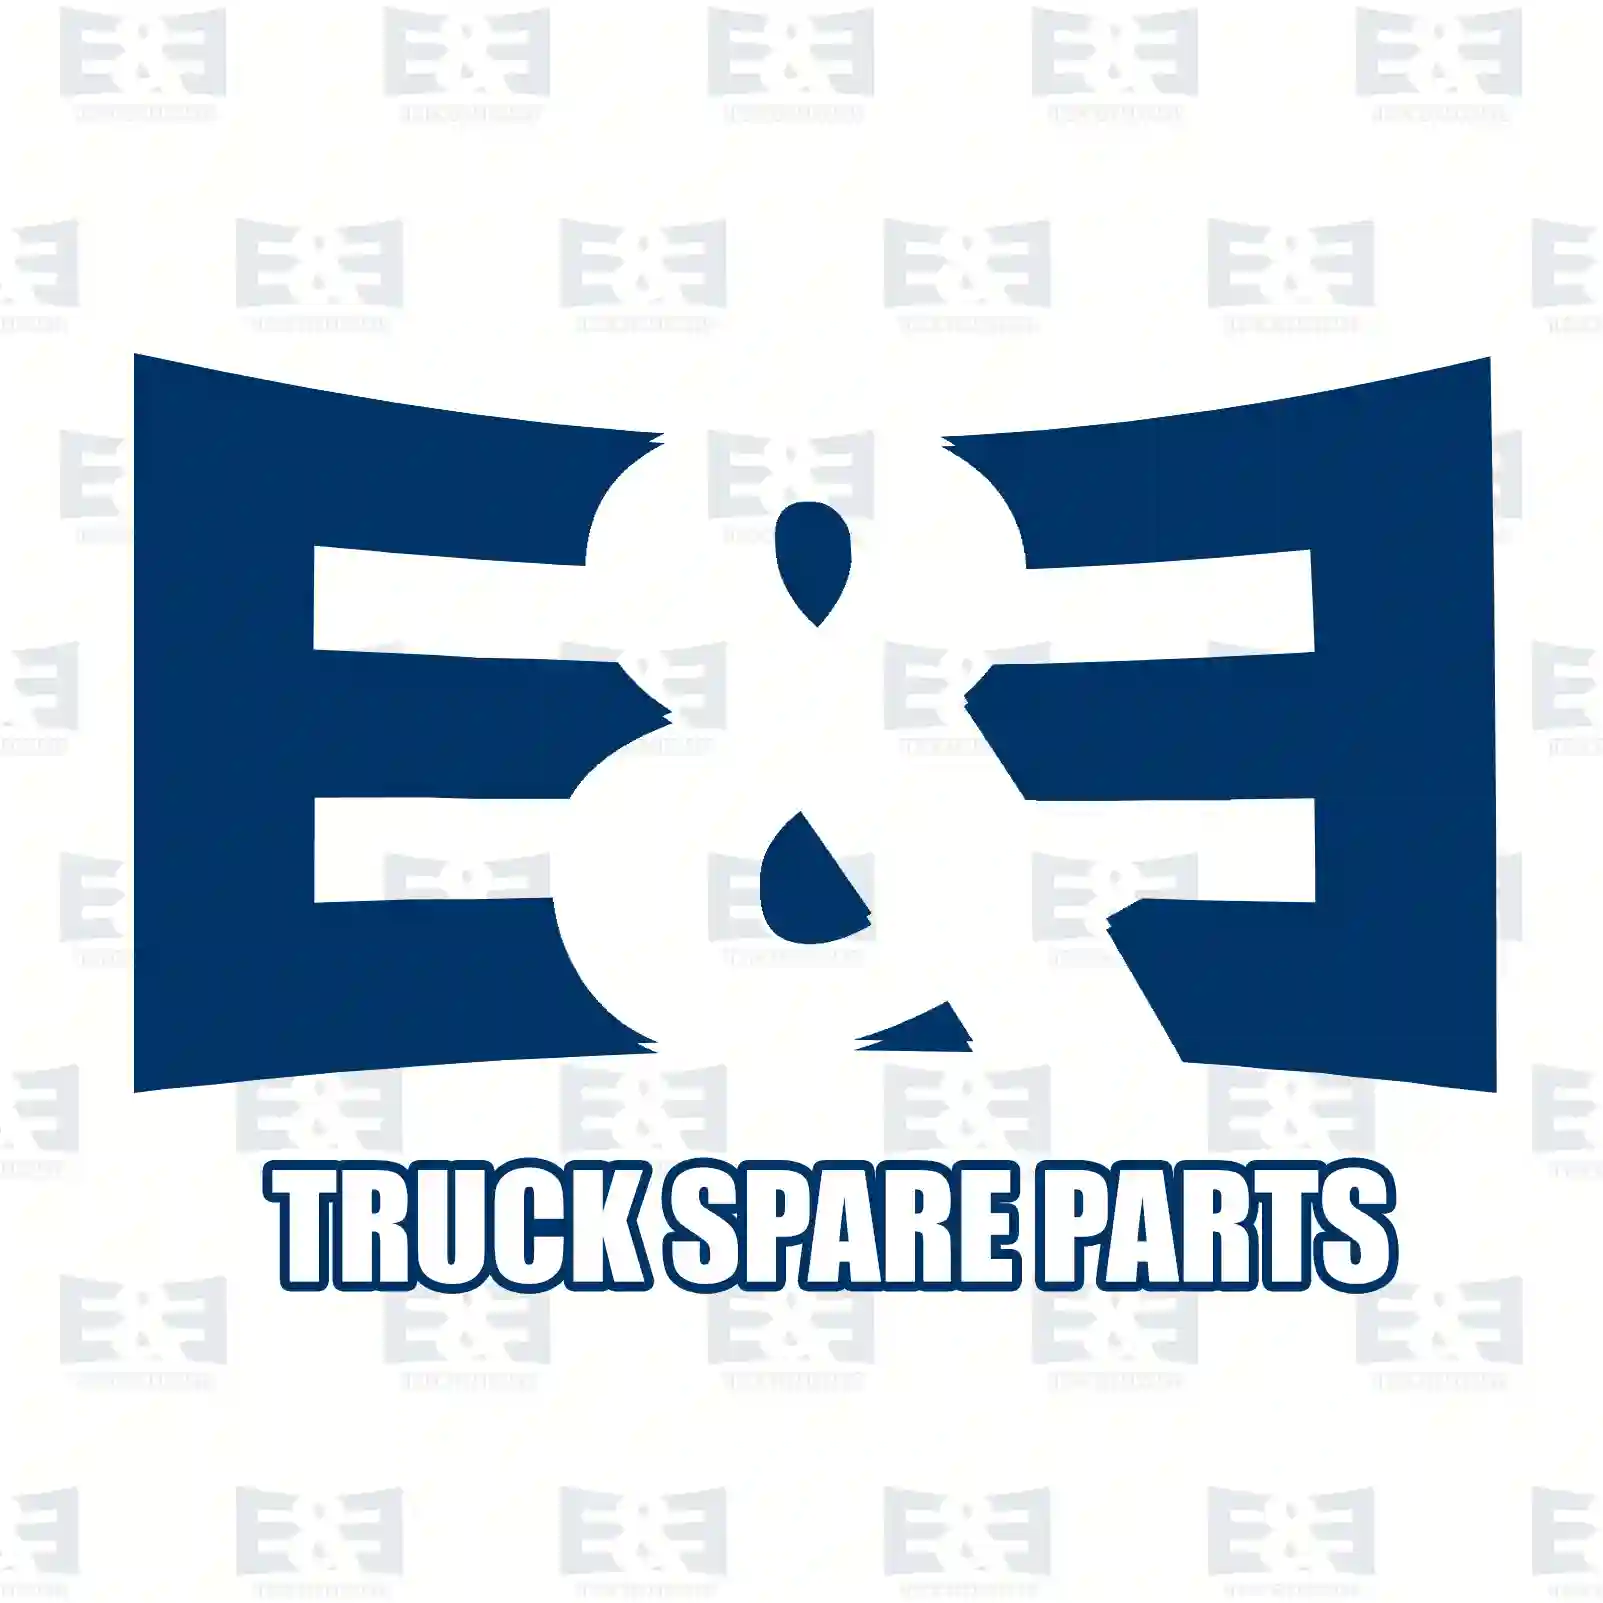 Repair kit, compressor, 2E2293431, 0011308115S5, 0011308215S5, 0011308315S5, 1918307S1, 2024410S1 ||  2E2293431 E&E Truck Spare Parts | Truck Spare Parts, Auotomotive Spare Parts Repair kit, compressor, 2E2293431, 0011308115S5, 0011308215S5, 0011308315S5, 1918307S1, 2024410S1 ||  2E2293431 E&E Truck Spare Parts | Truck Spare Parts, Auotomotive Spare Parts